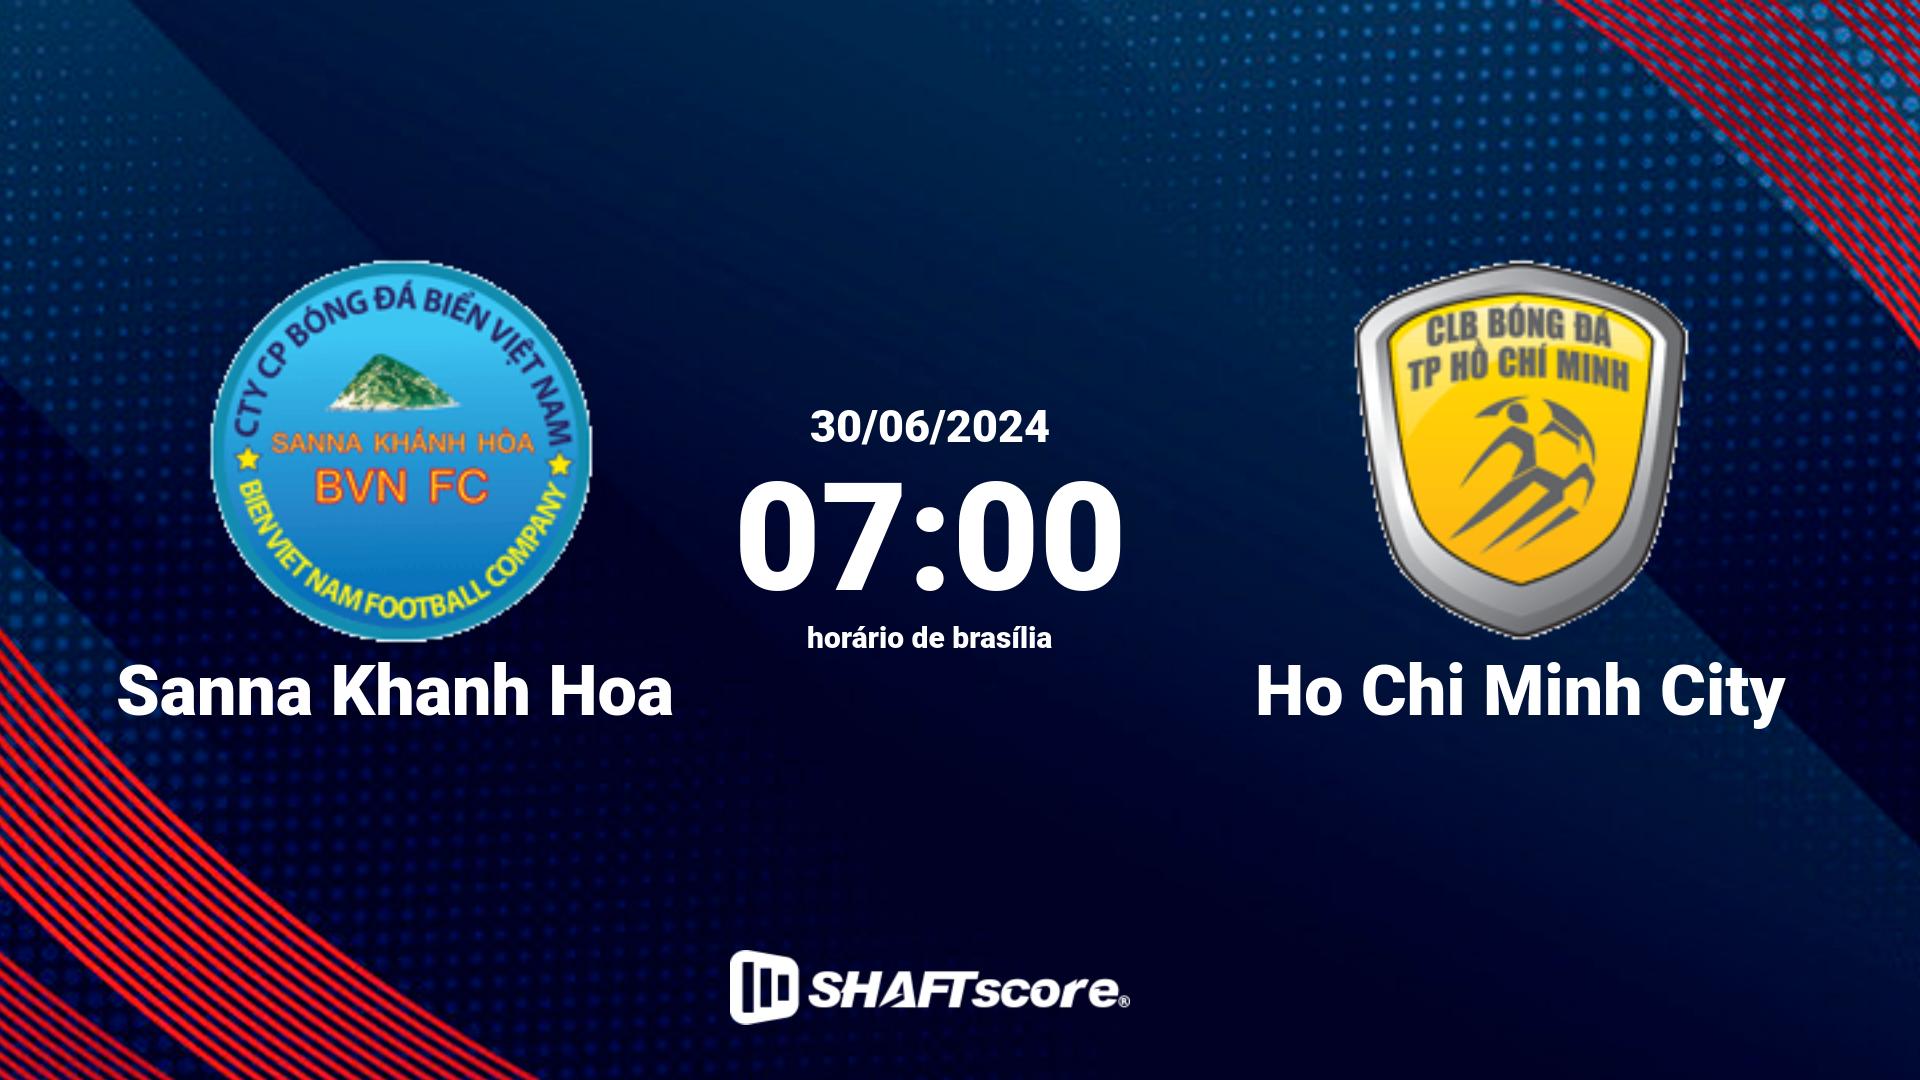 Estatísticas do jogo Sanna Khanh Hoa vs Ho Chi Minh City 30.06 07:00